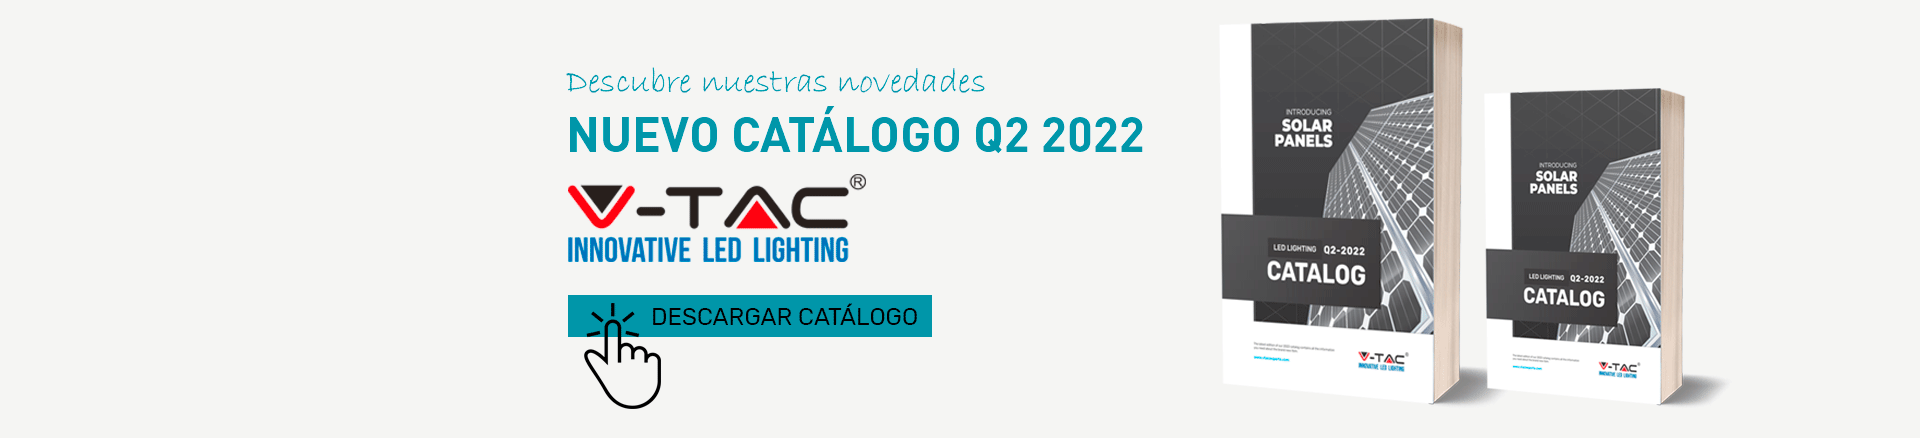 Descarga el nuevo catalogo de V-TAC Q2 2022